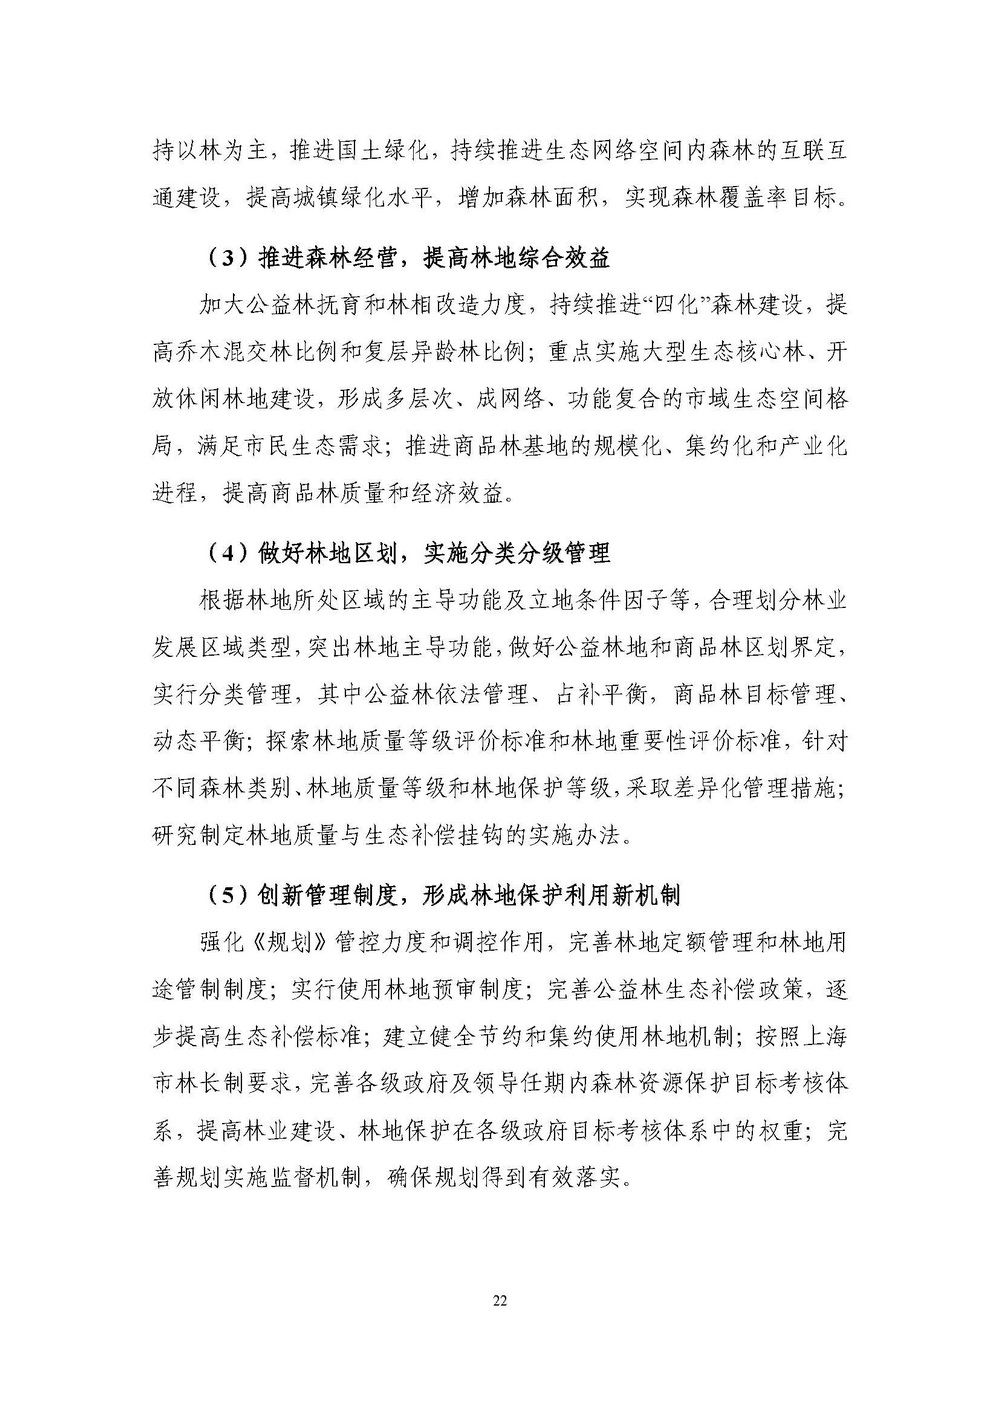 上海市森林和林地保护利用规划文本 公开稿 附图_页面_25.jpg